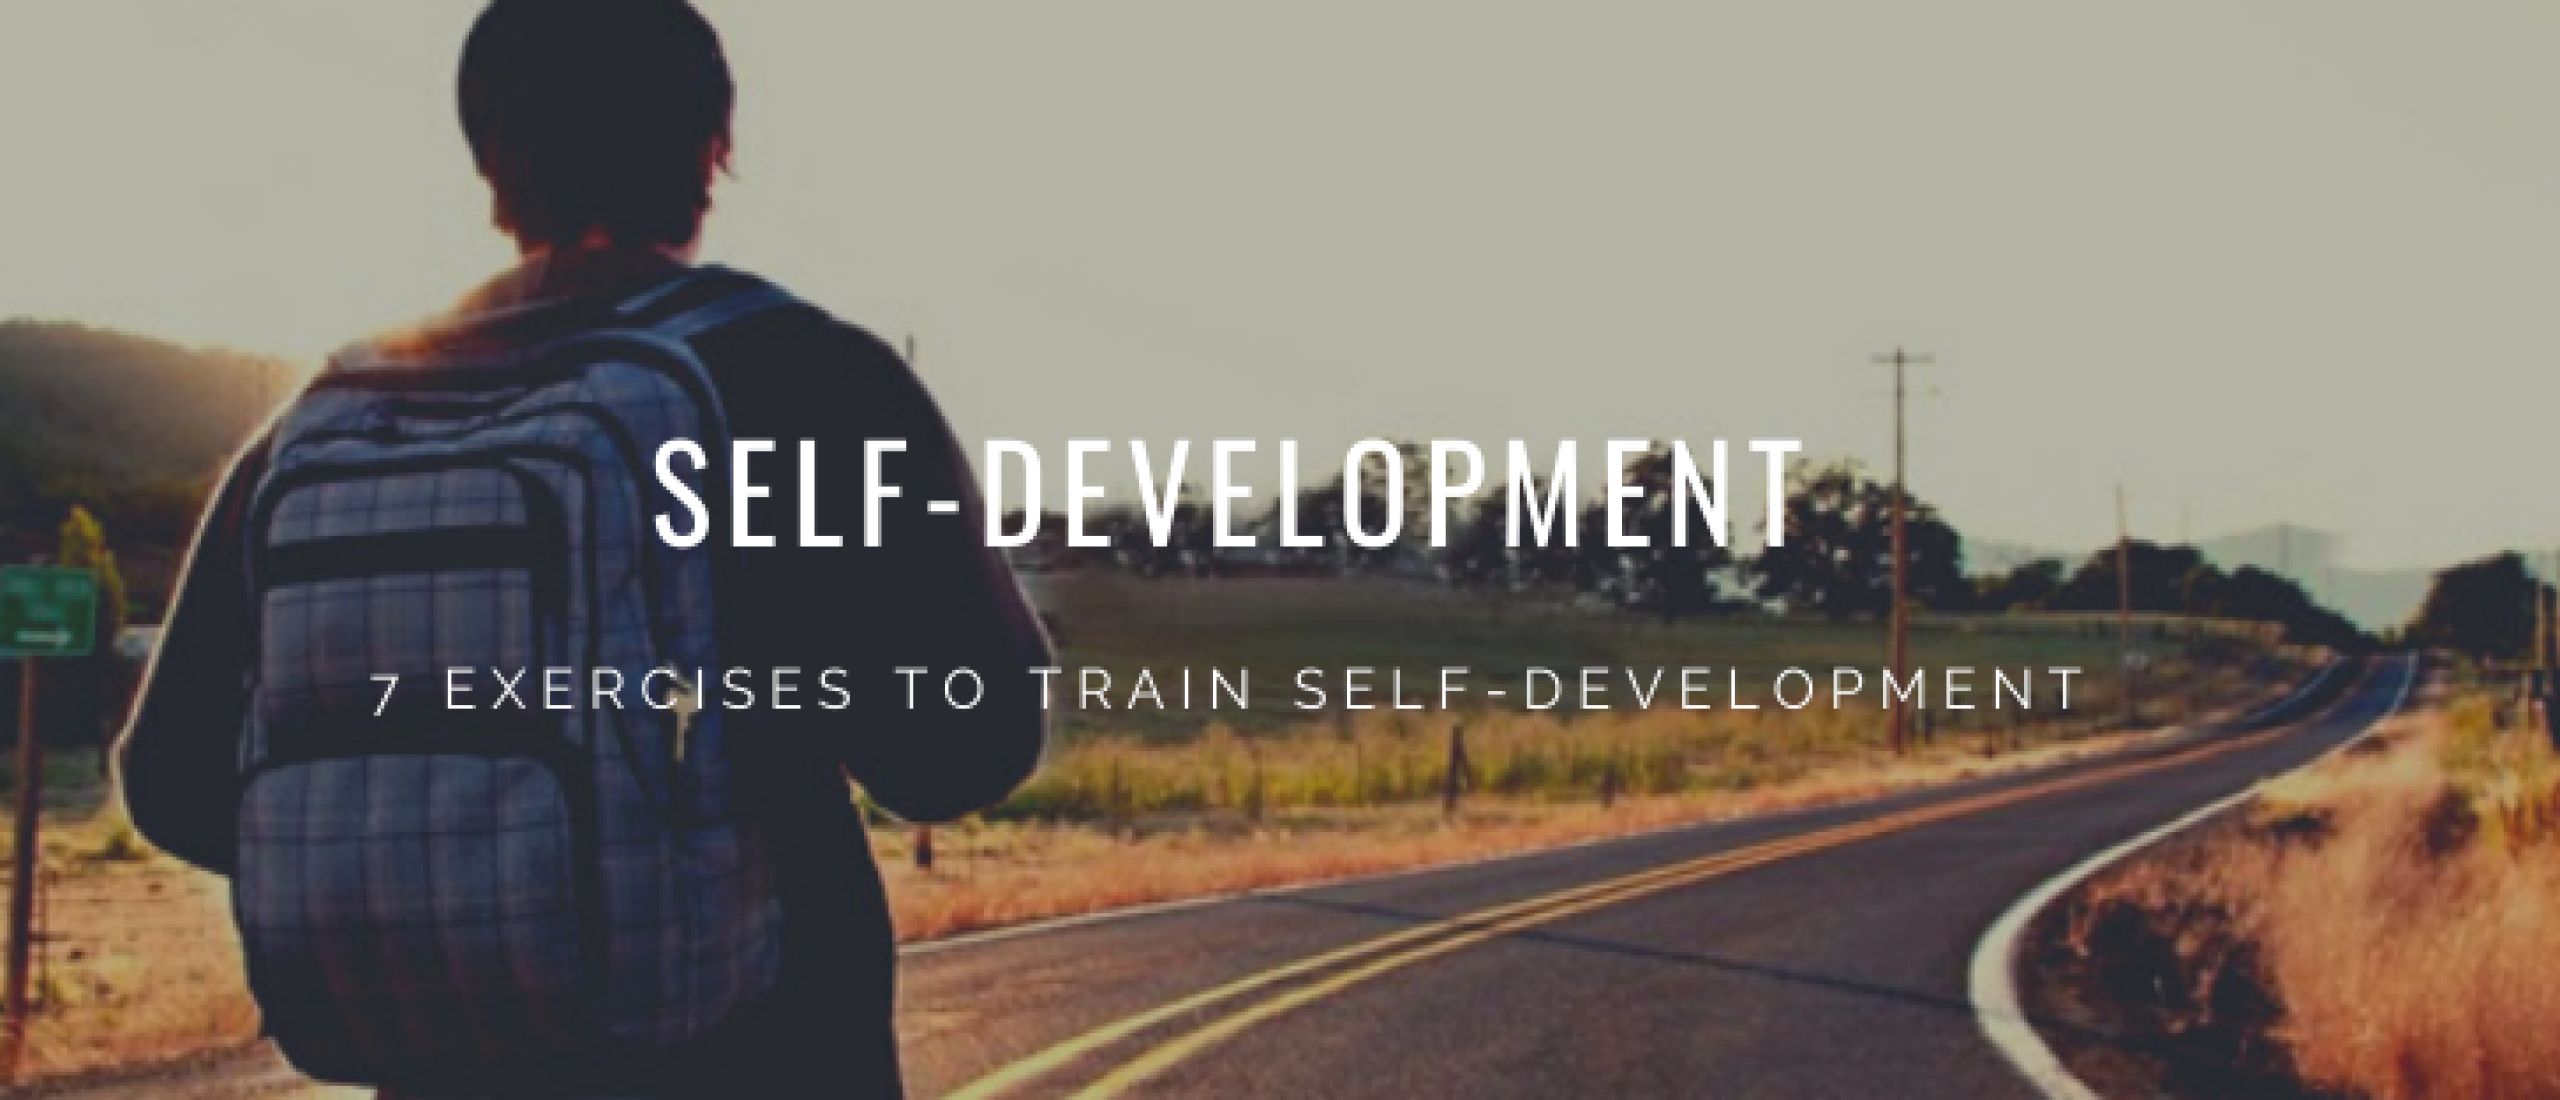 How to Train Self-Development: 7 Exercises